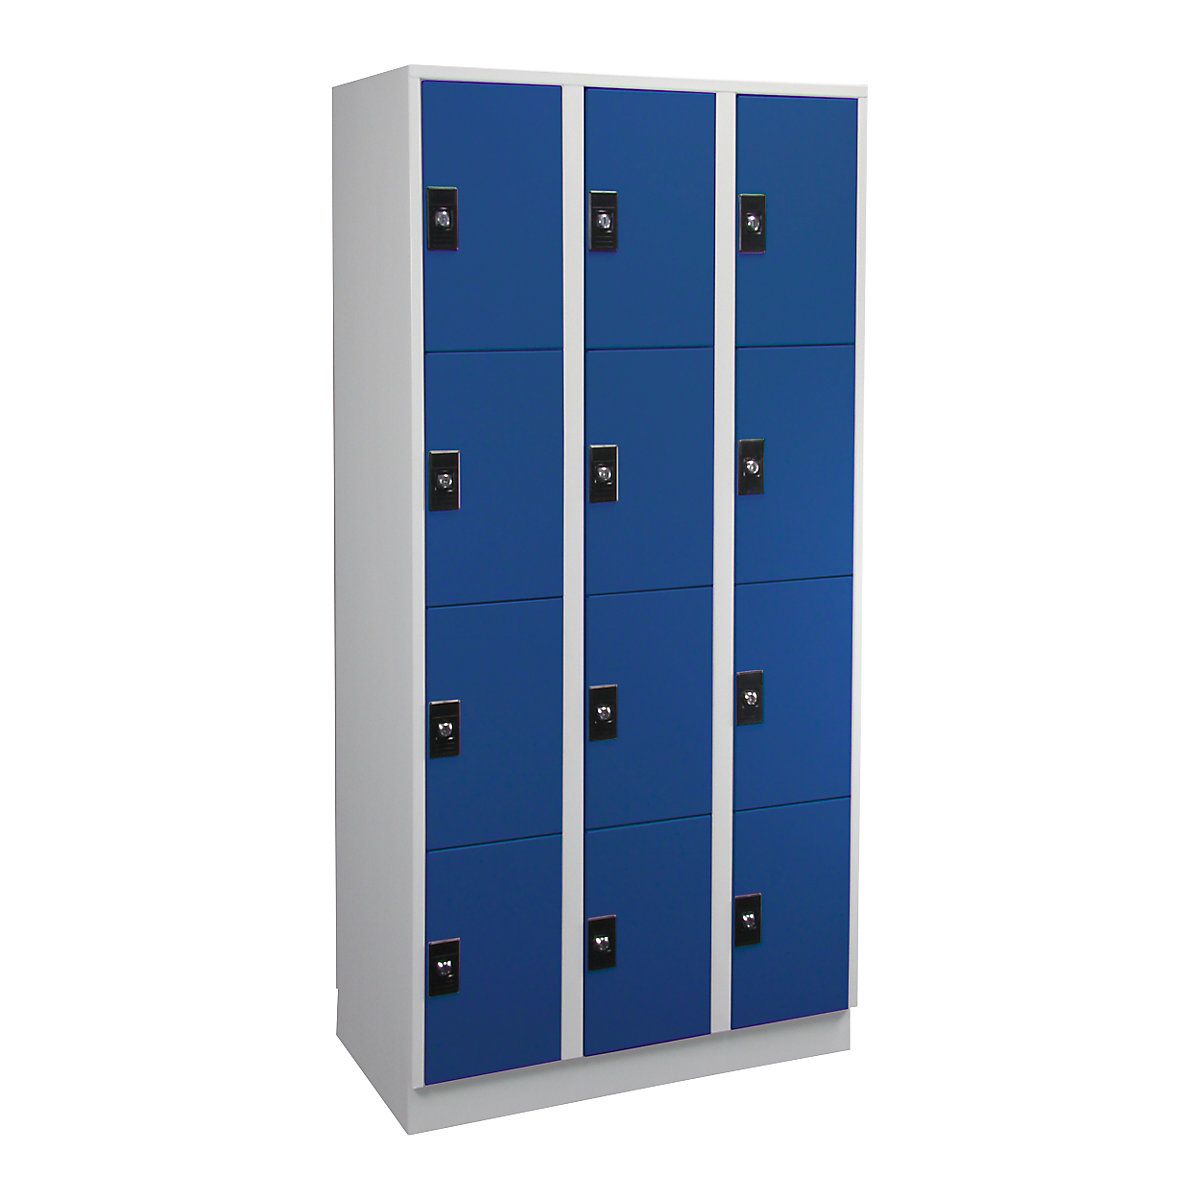 Vestiaire multicases – Wolf, 3 compartiments, 4 cases par compartiment, gris clair / bleu gentiane-5